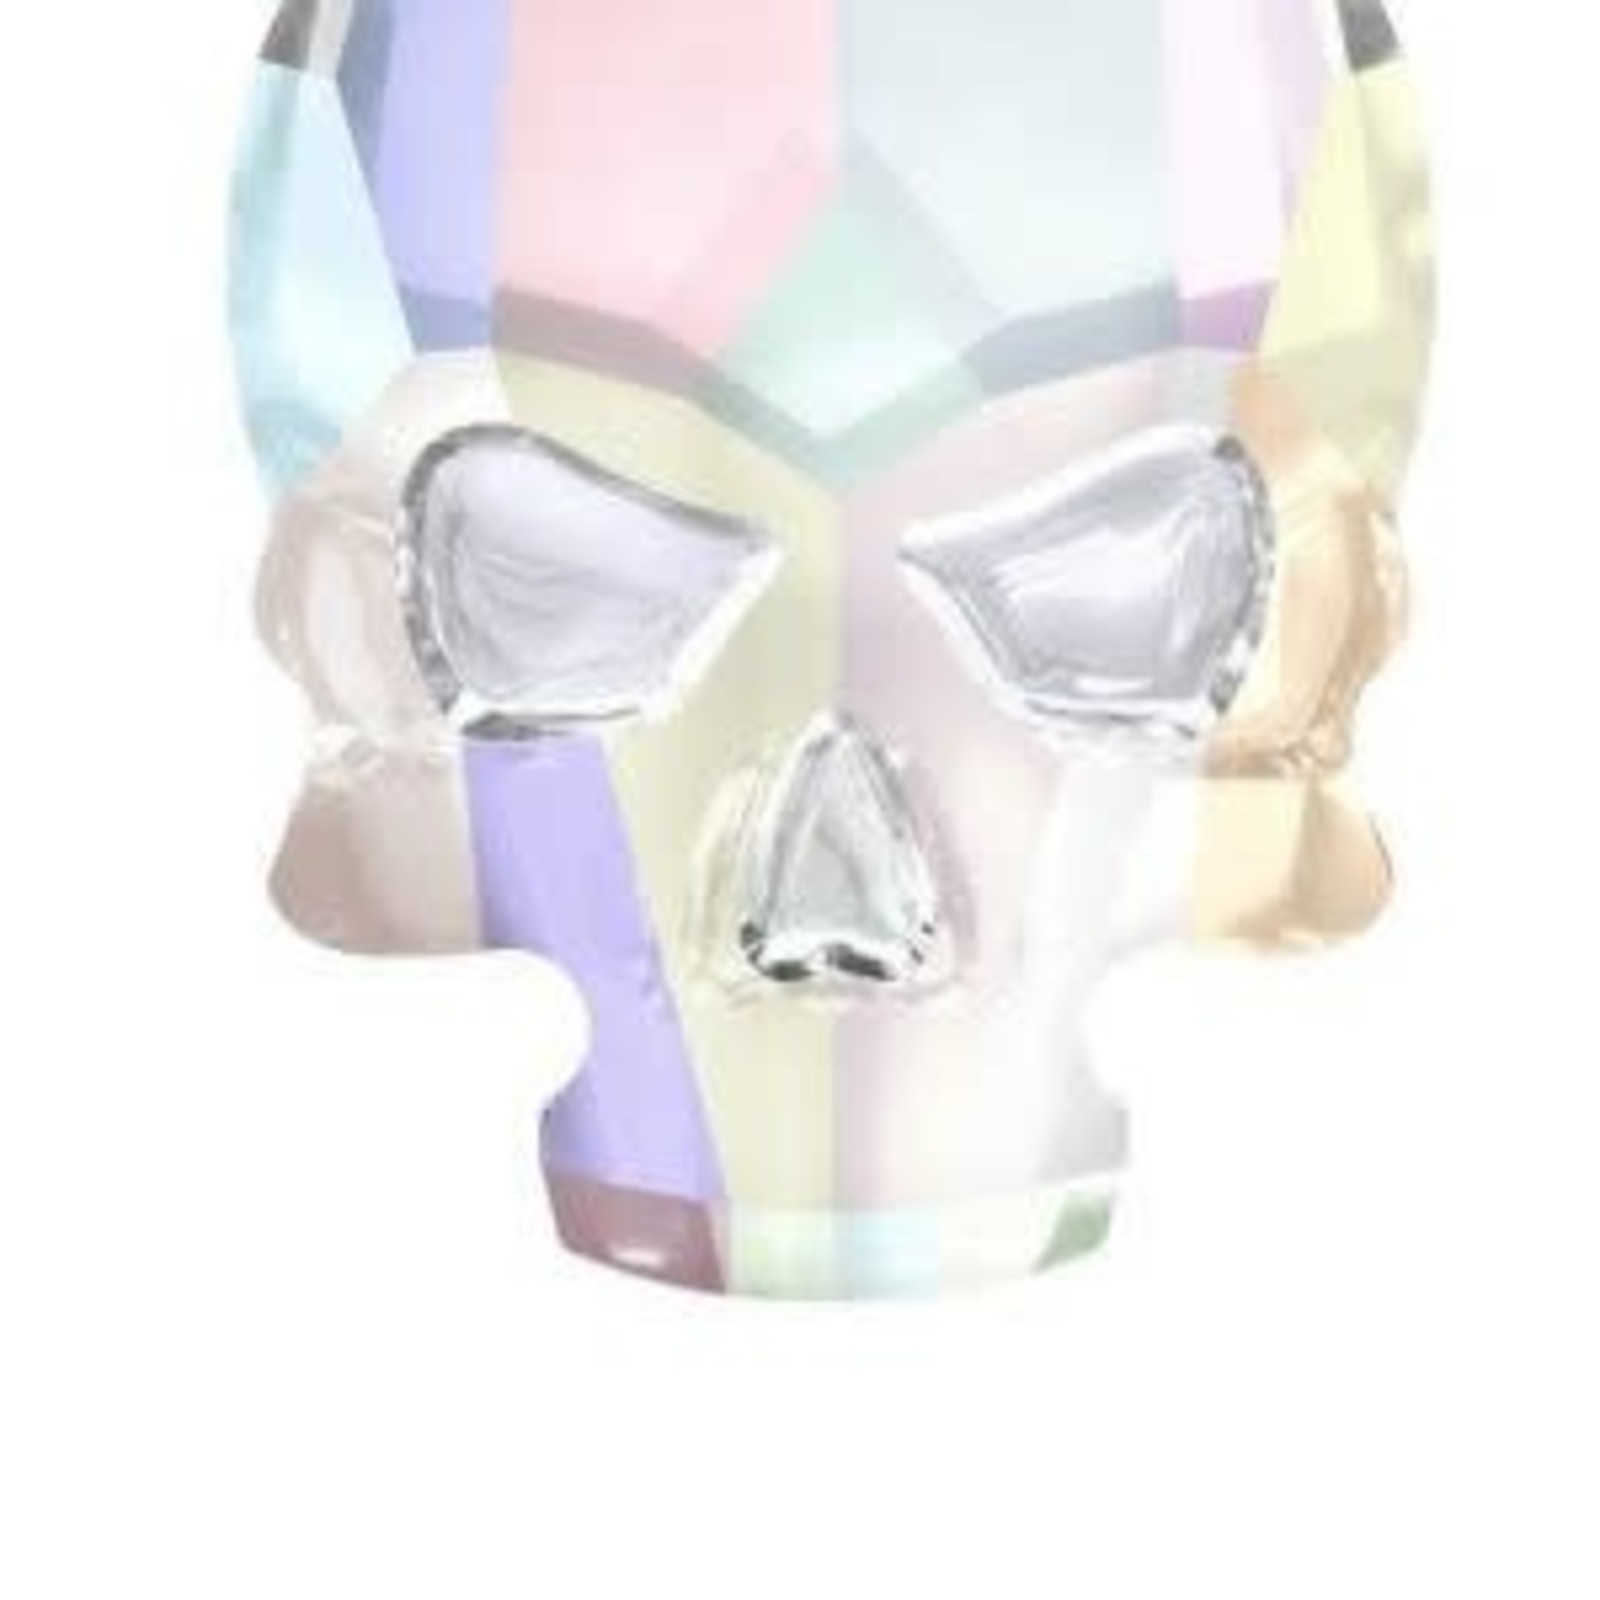 Swarovski Swarovski Skull Crystal AB ( 2 stuks )